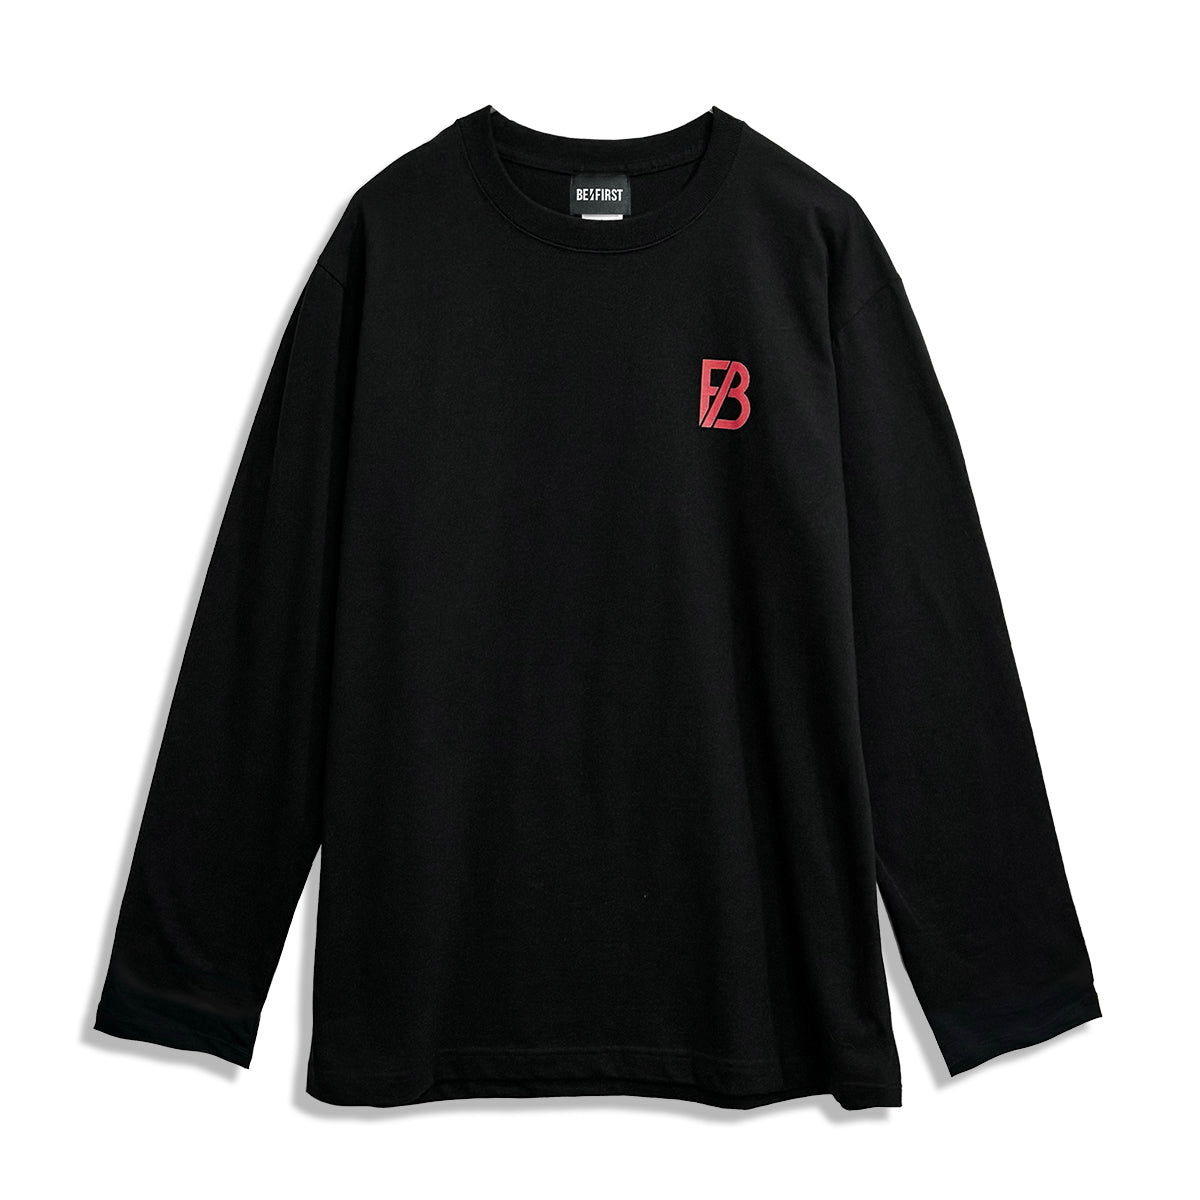 BE:FIRST ロングスリーブTシャツ BLACK【4/8〜13発送予定